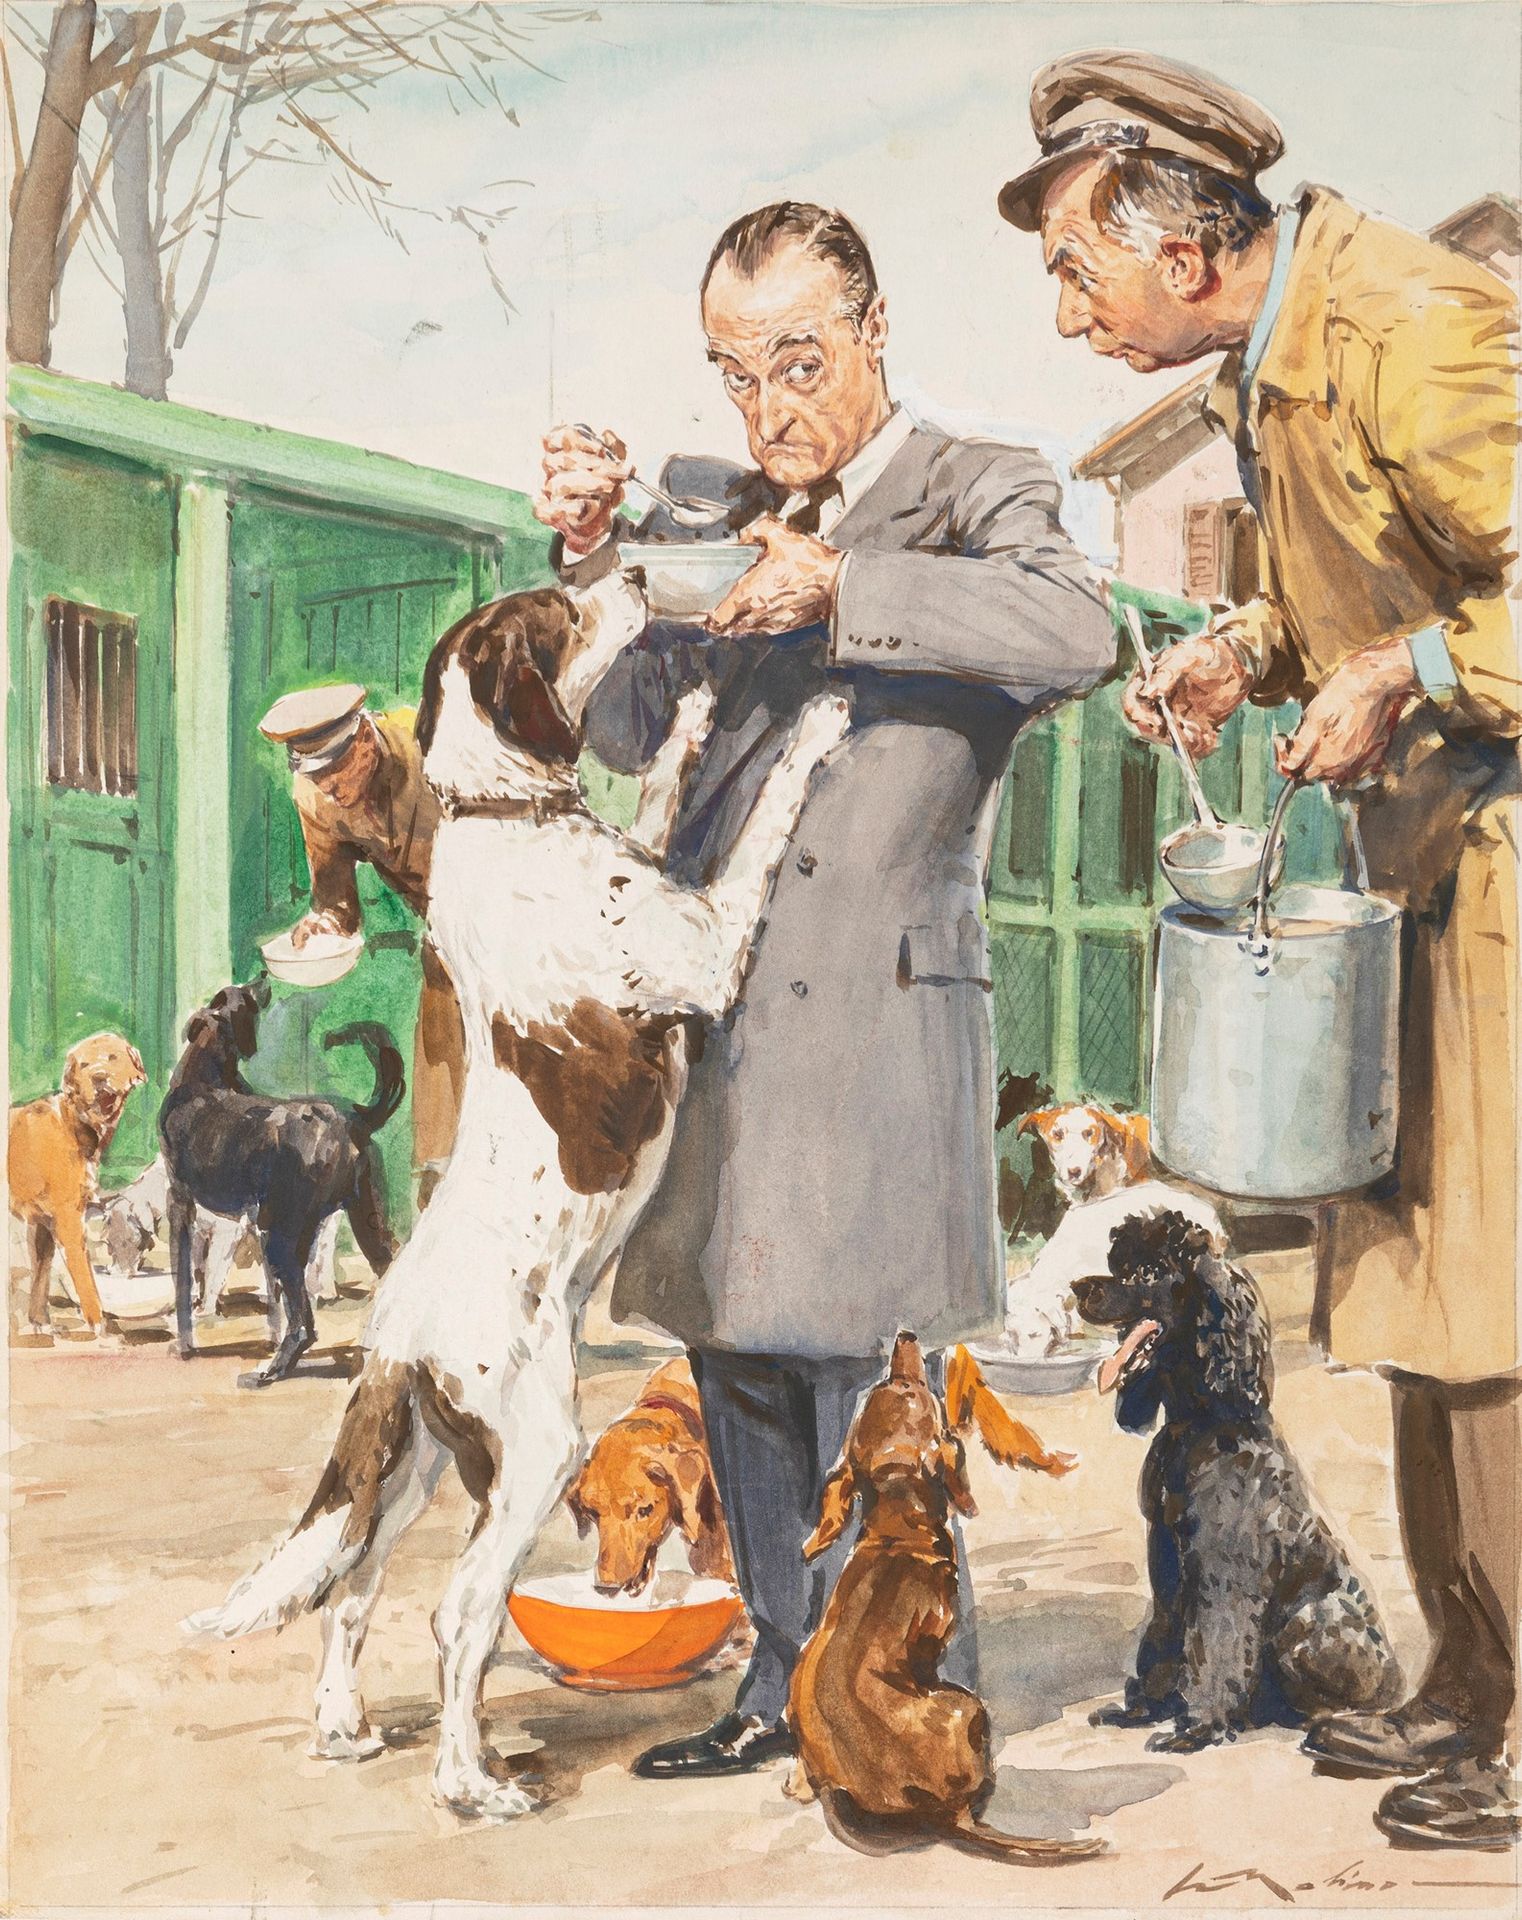 Walter Molino Totò e i suoi cani

tempera and watercolor on thin cardboard
26 x &hellip;